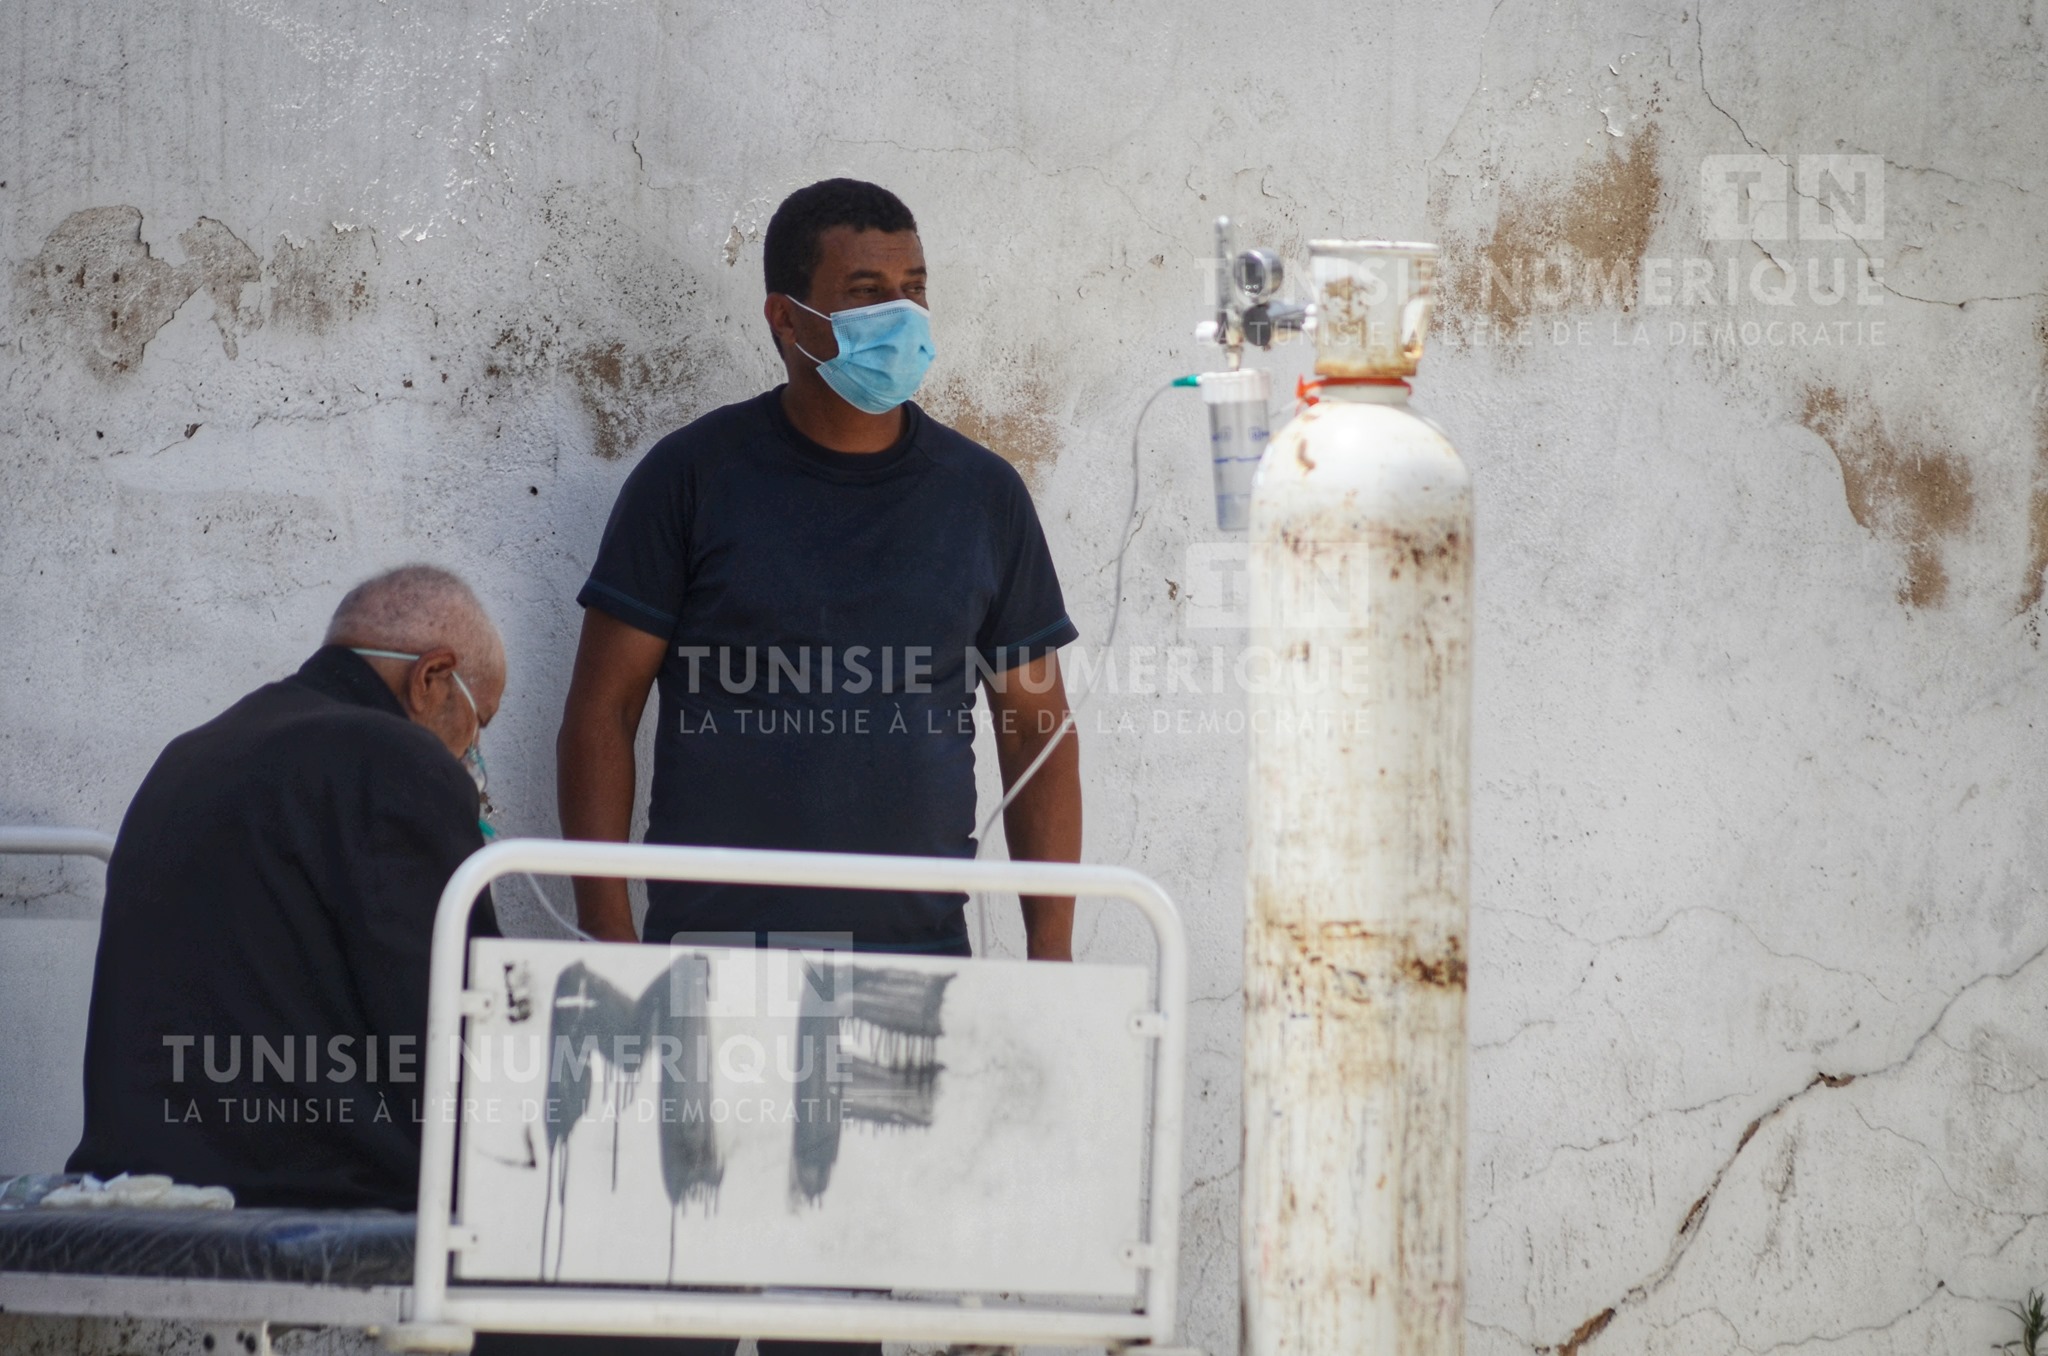 Tunisie-Hichem Mechichi rassure: La situation sanitaire n’est pas hors de contrôle!